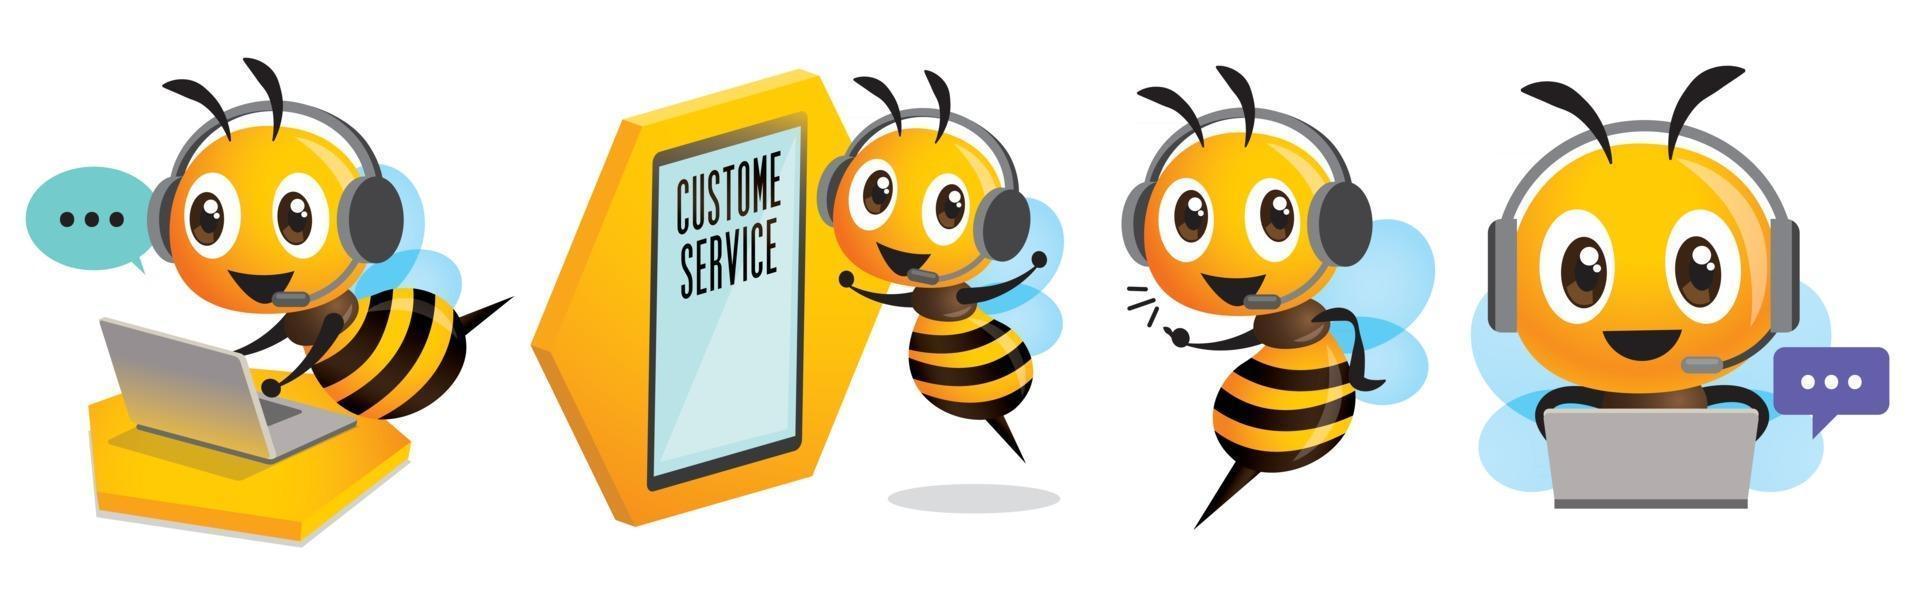 Operador de abelha sorridente fofo com fone de ouvido trabalhando no call center e comunicando-se para atendimento ao cliente vetor